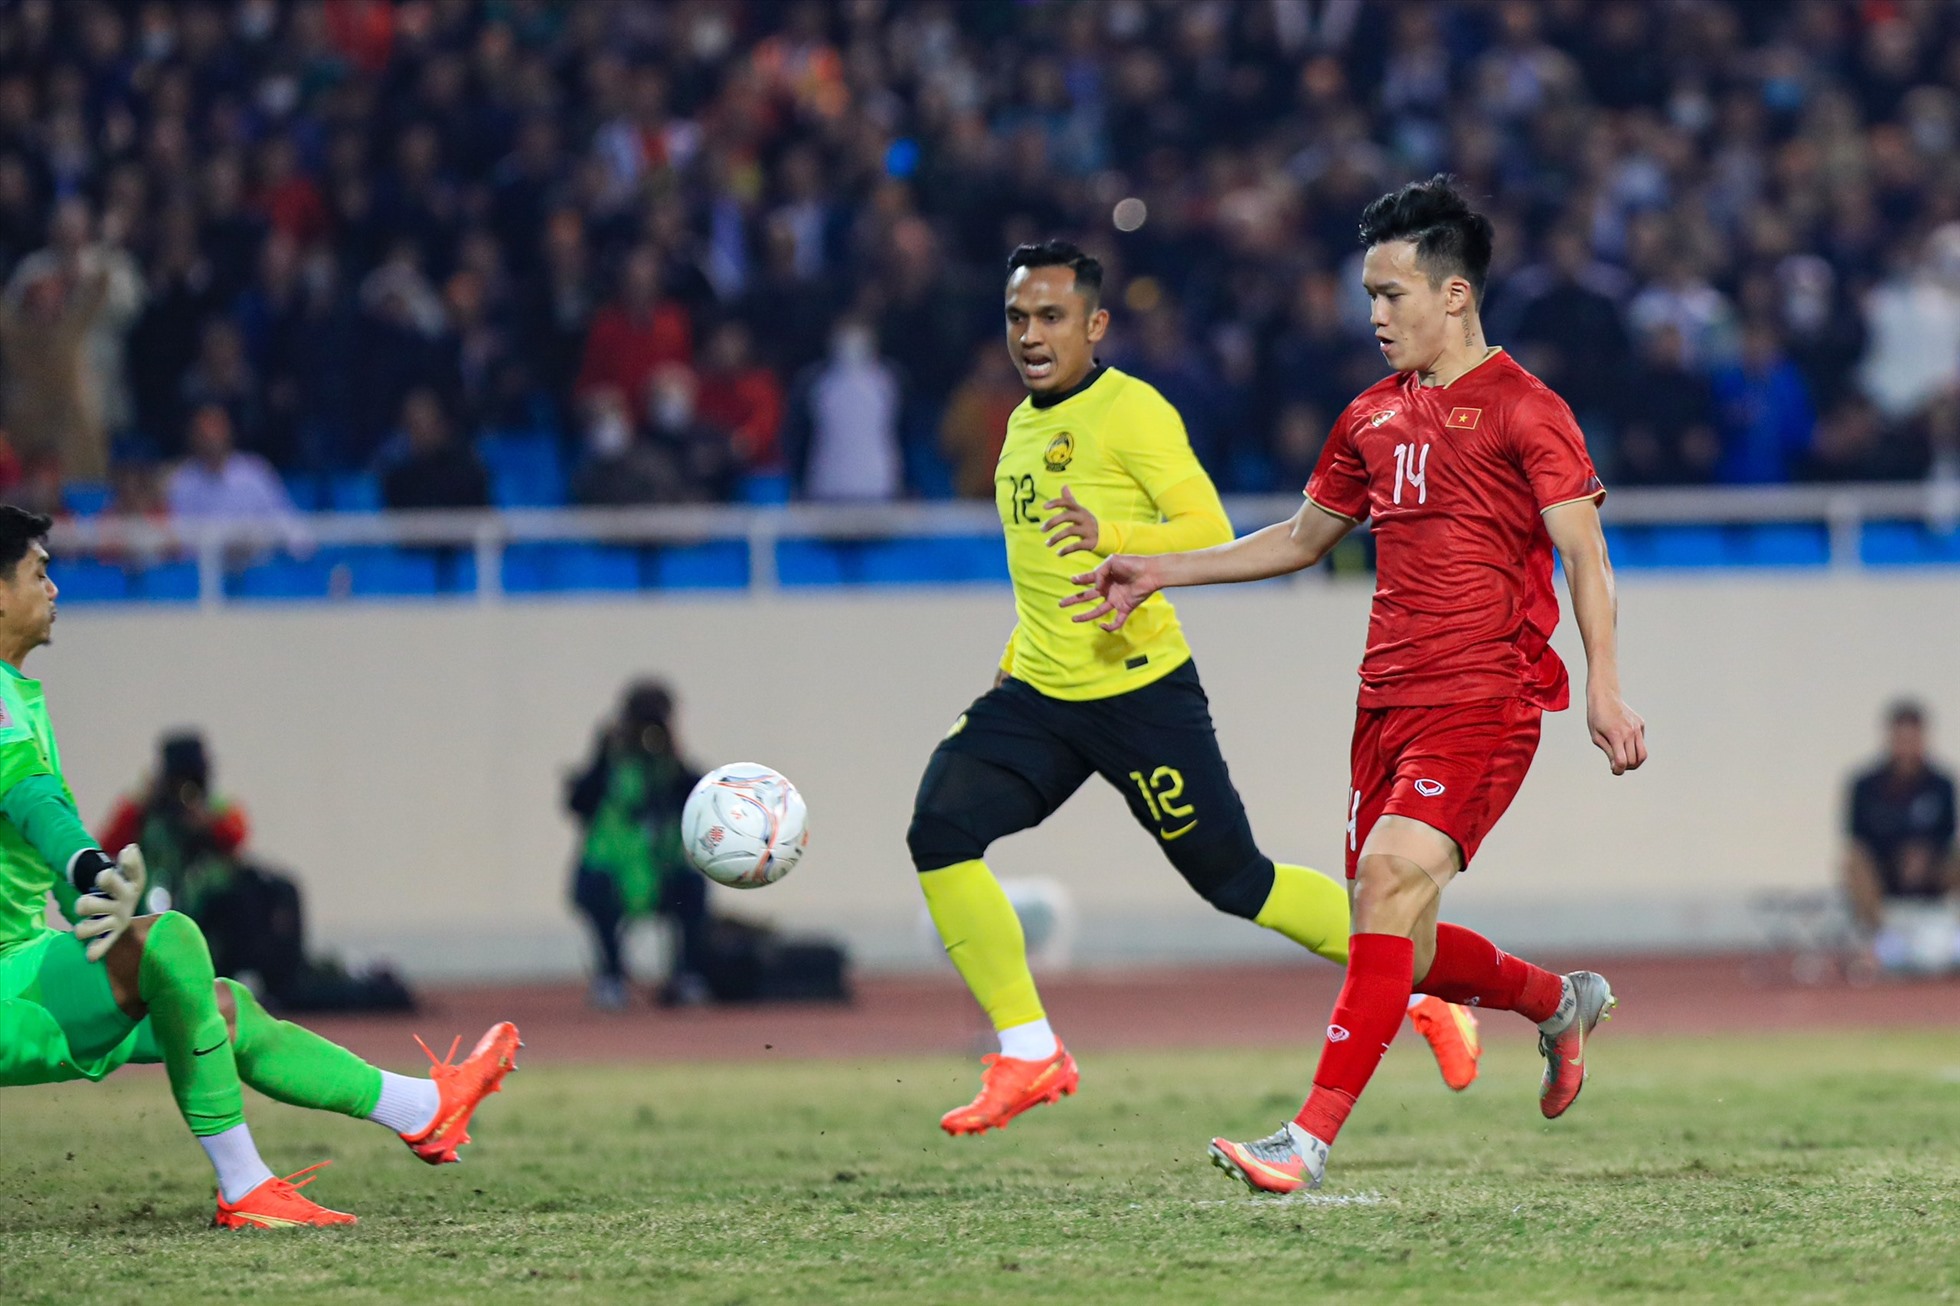 Trong những phút cuối, Quang Hải vào sân và ngay lập tức thể hiện vai trò với đường kiến tạo đẹp mắt, giúp Hoàng Đức ấn định thắng lợi 3-0 ở phút 83.